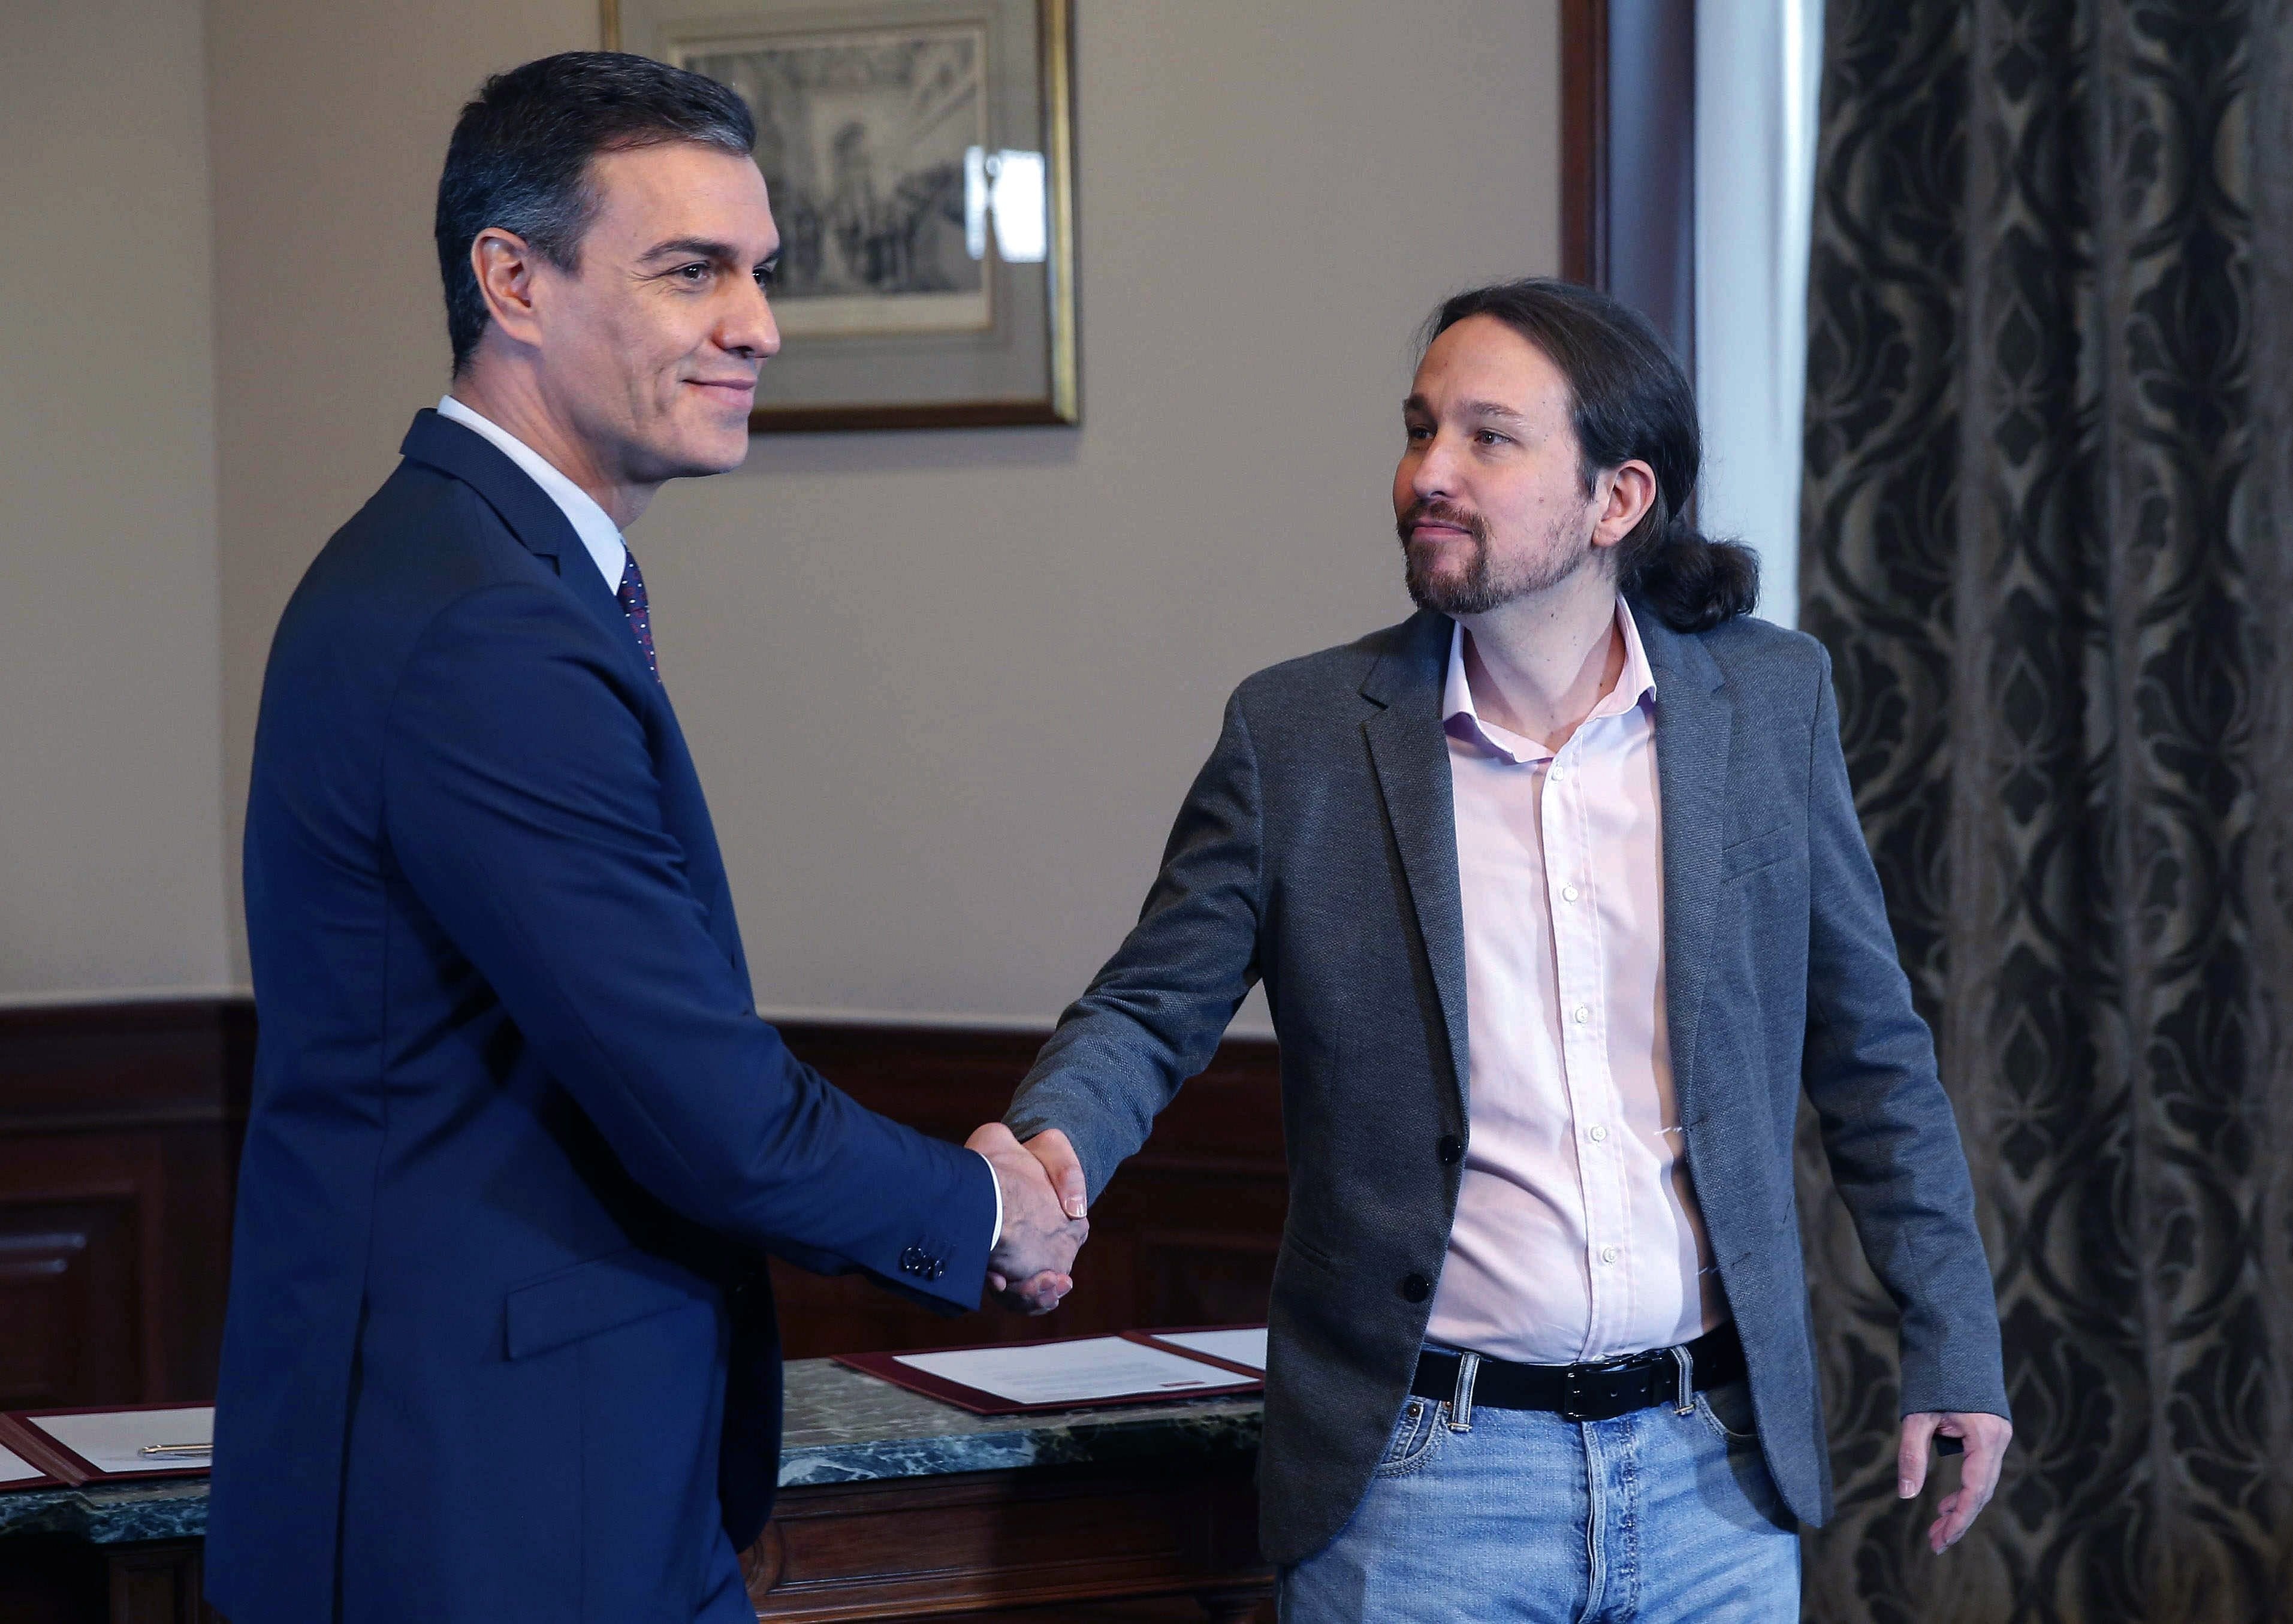 Rahola, Mainat y Soler dudan del pacto PSOE-Podemos: "¿De qué cojones hablan?"